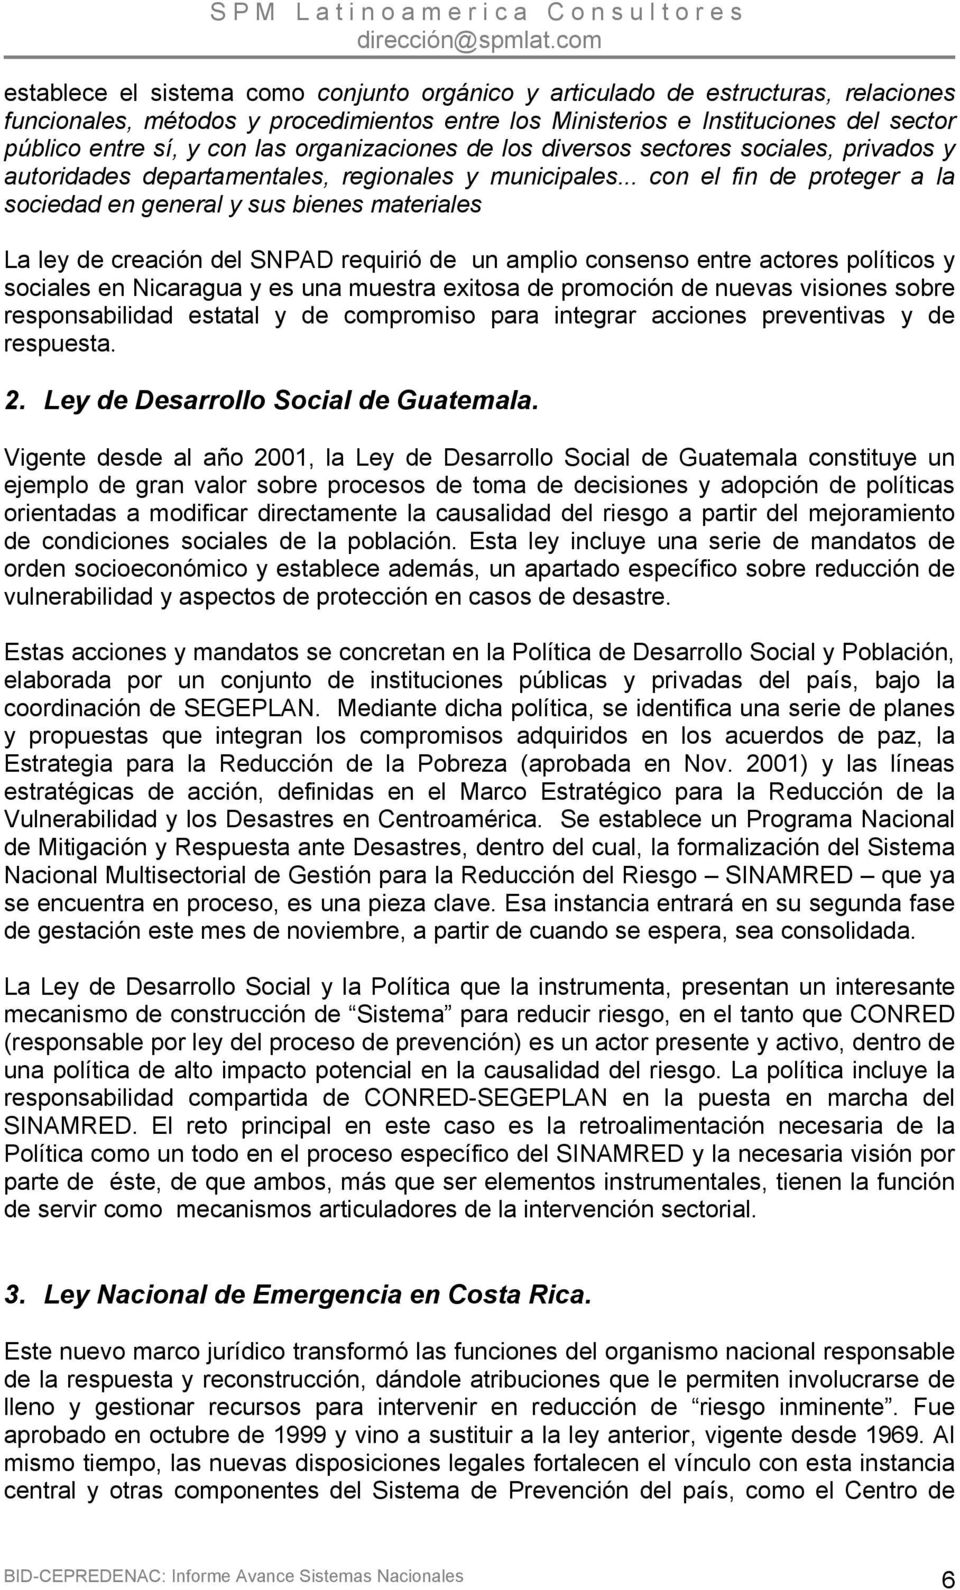 .. con el fin de proteger a la sociedad en general y sus bienes materiales La ley de creación del SNPAD requirió de un amplio consenso entre actores políticos y sociales en Nicaragua y es una muestra